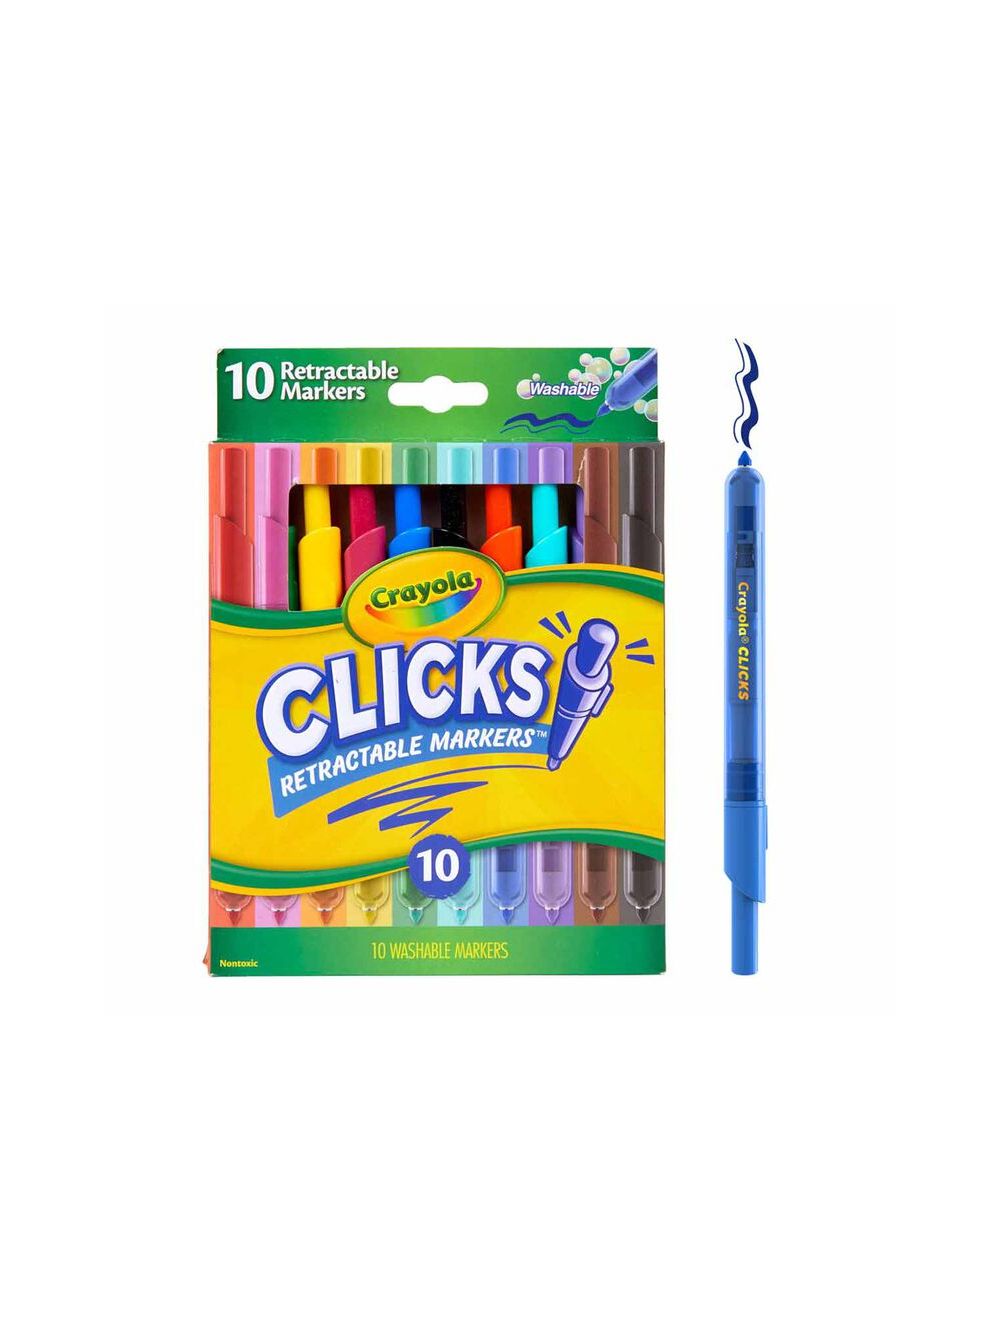 Clicks - Retractable Markers 10, by Crayola 